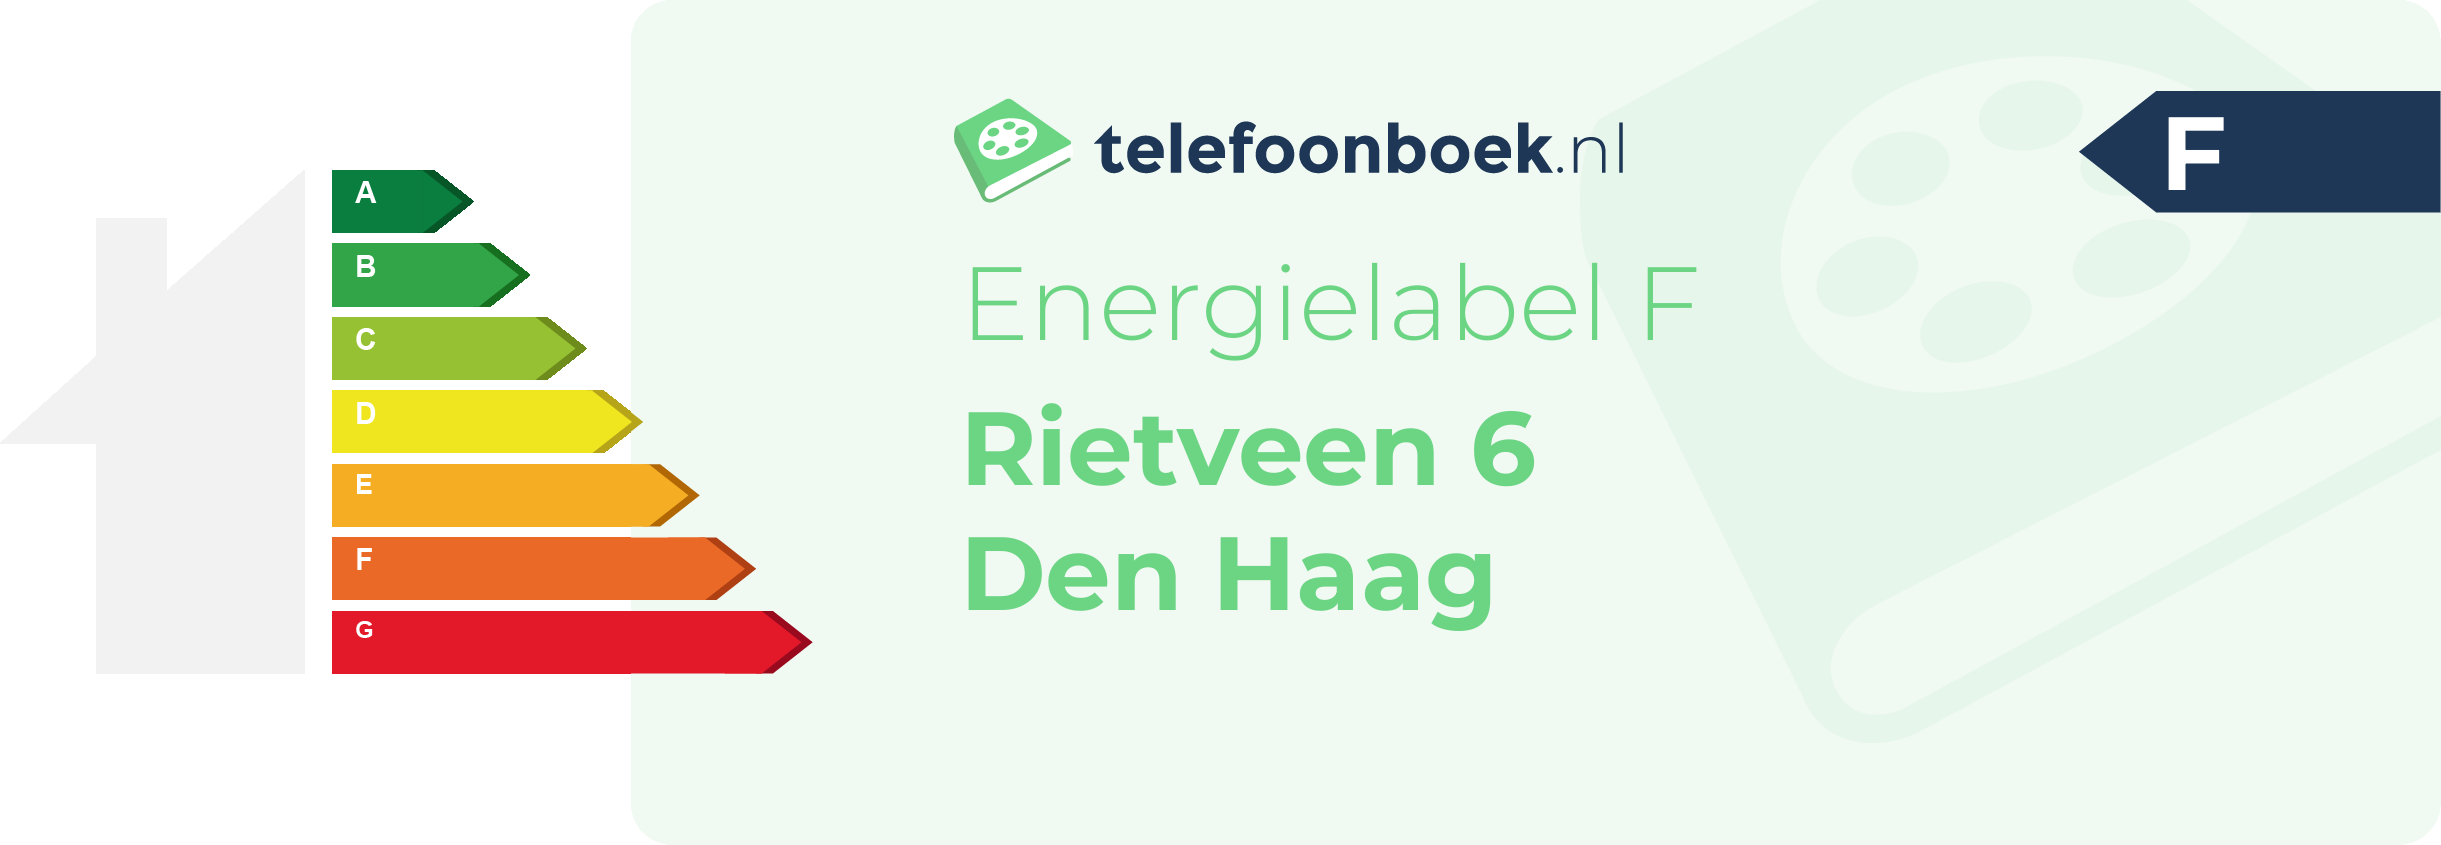 Energielabel Rietveen 6 Den Haag